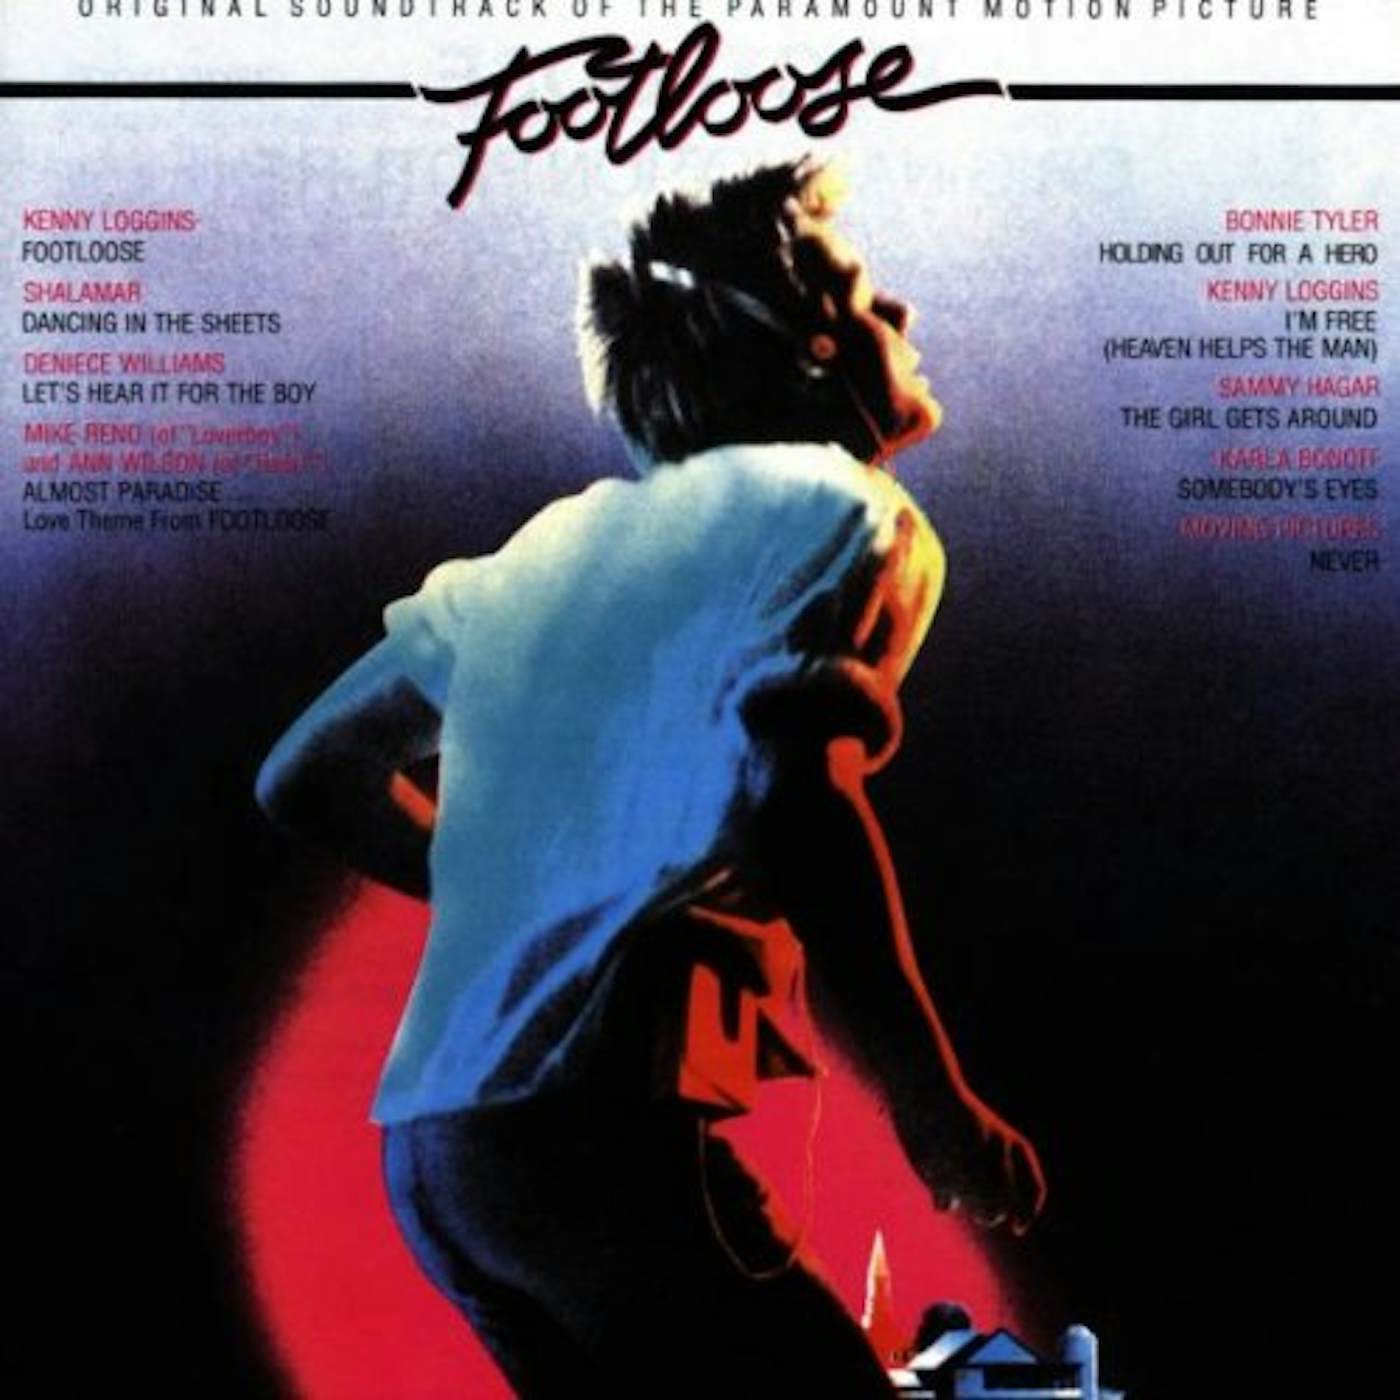 FOOTLOOSE / Original Soundtrack CD